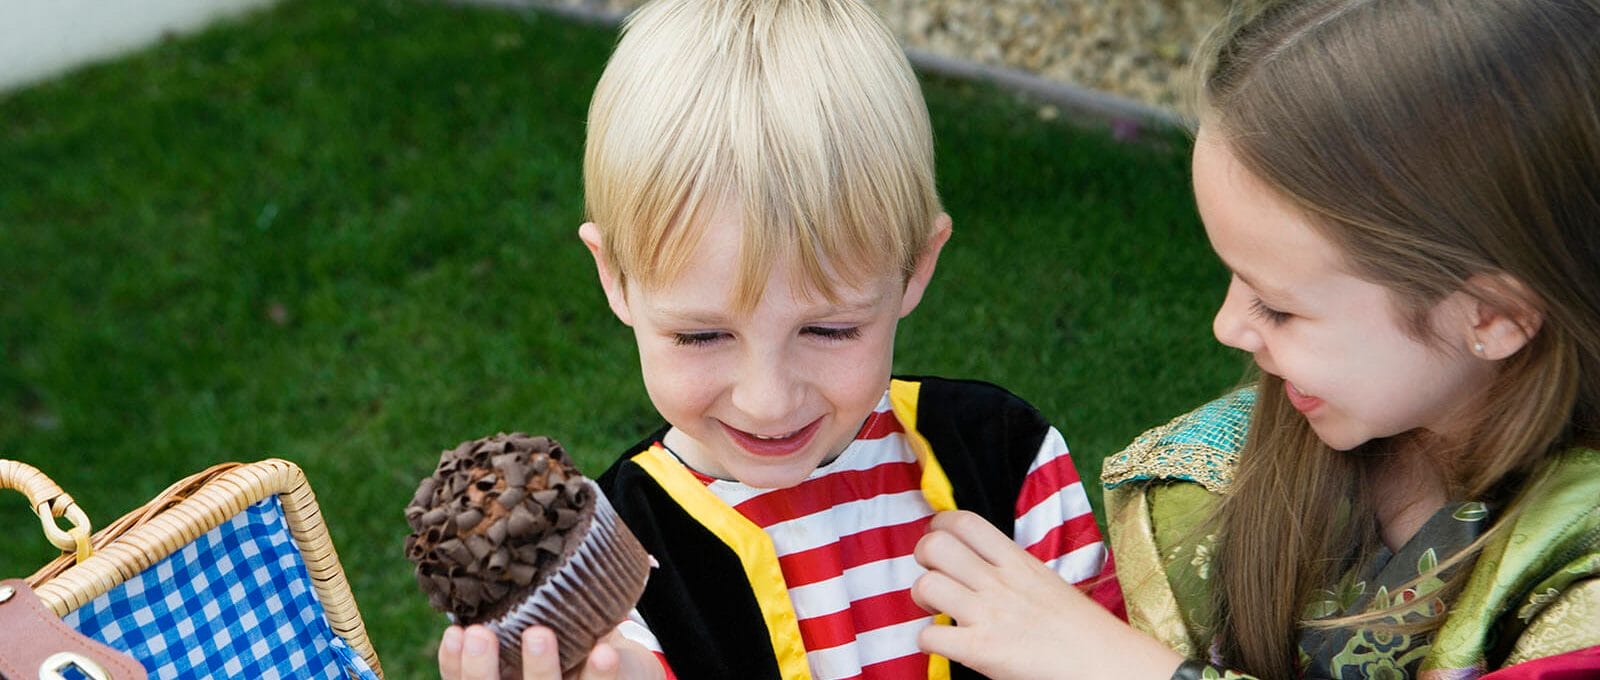 Menino aniversariante com cupcake na mão